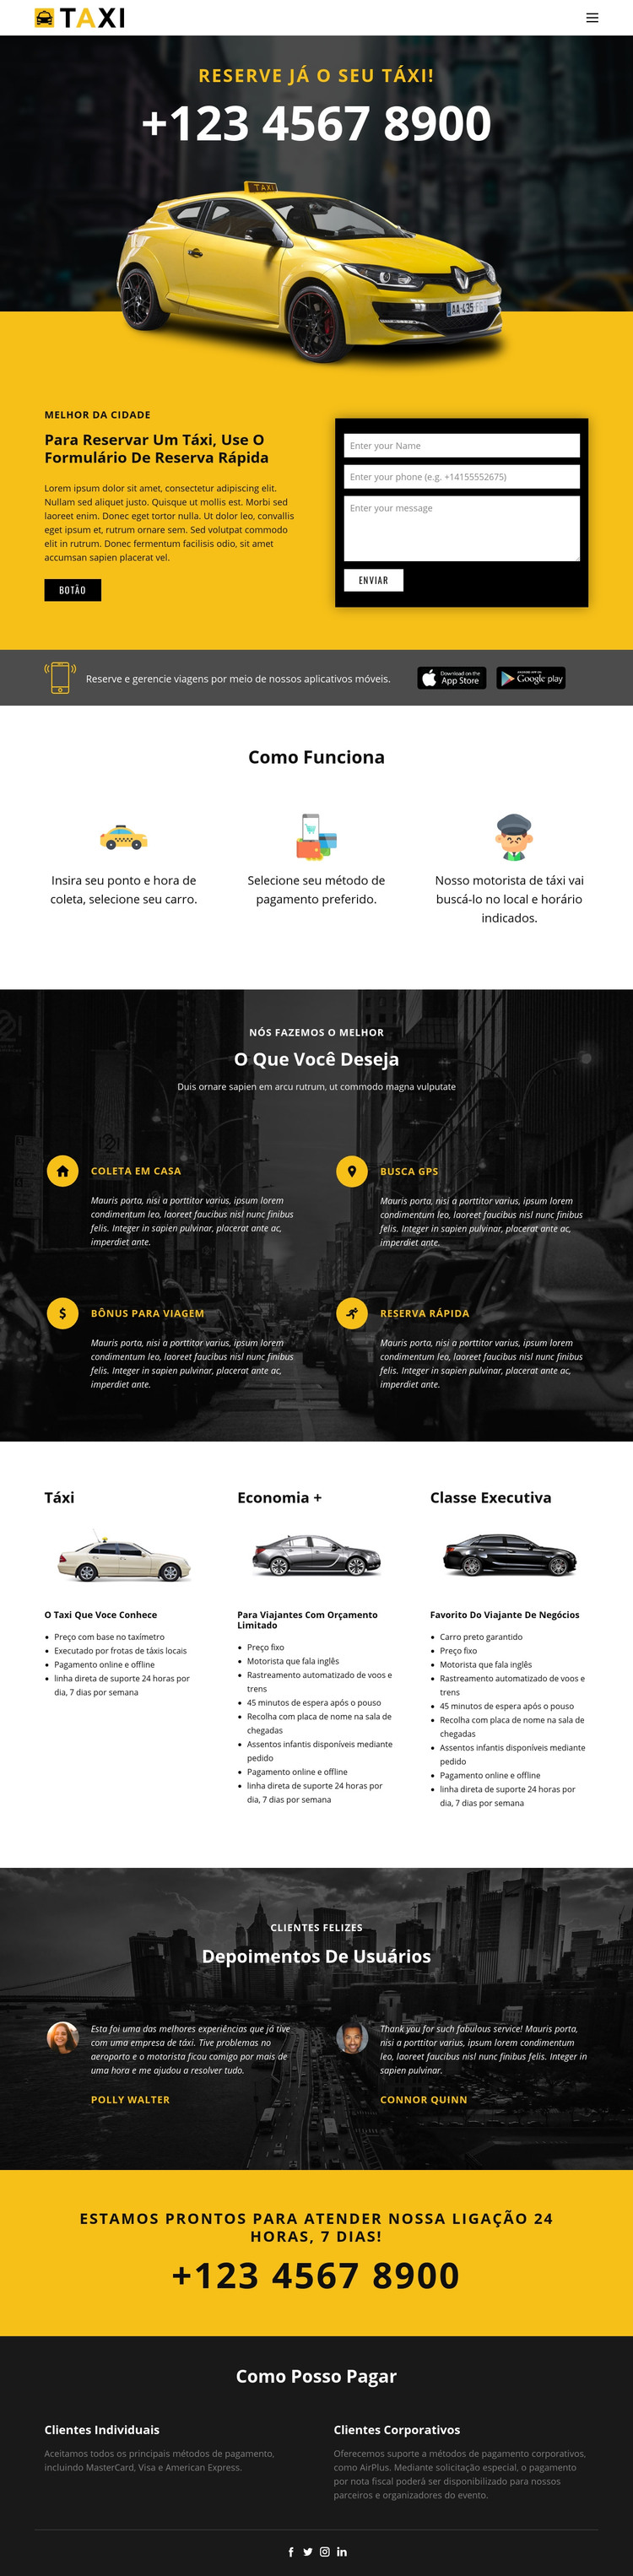 Carros táxi mais rápidos Modelo HTML